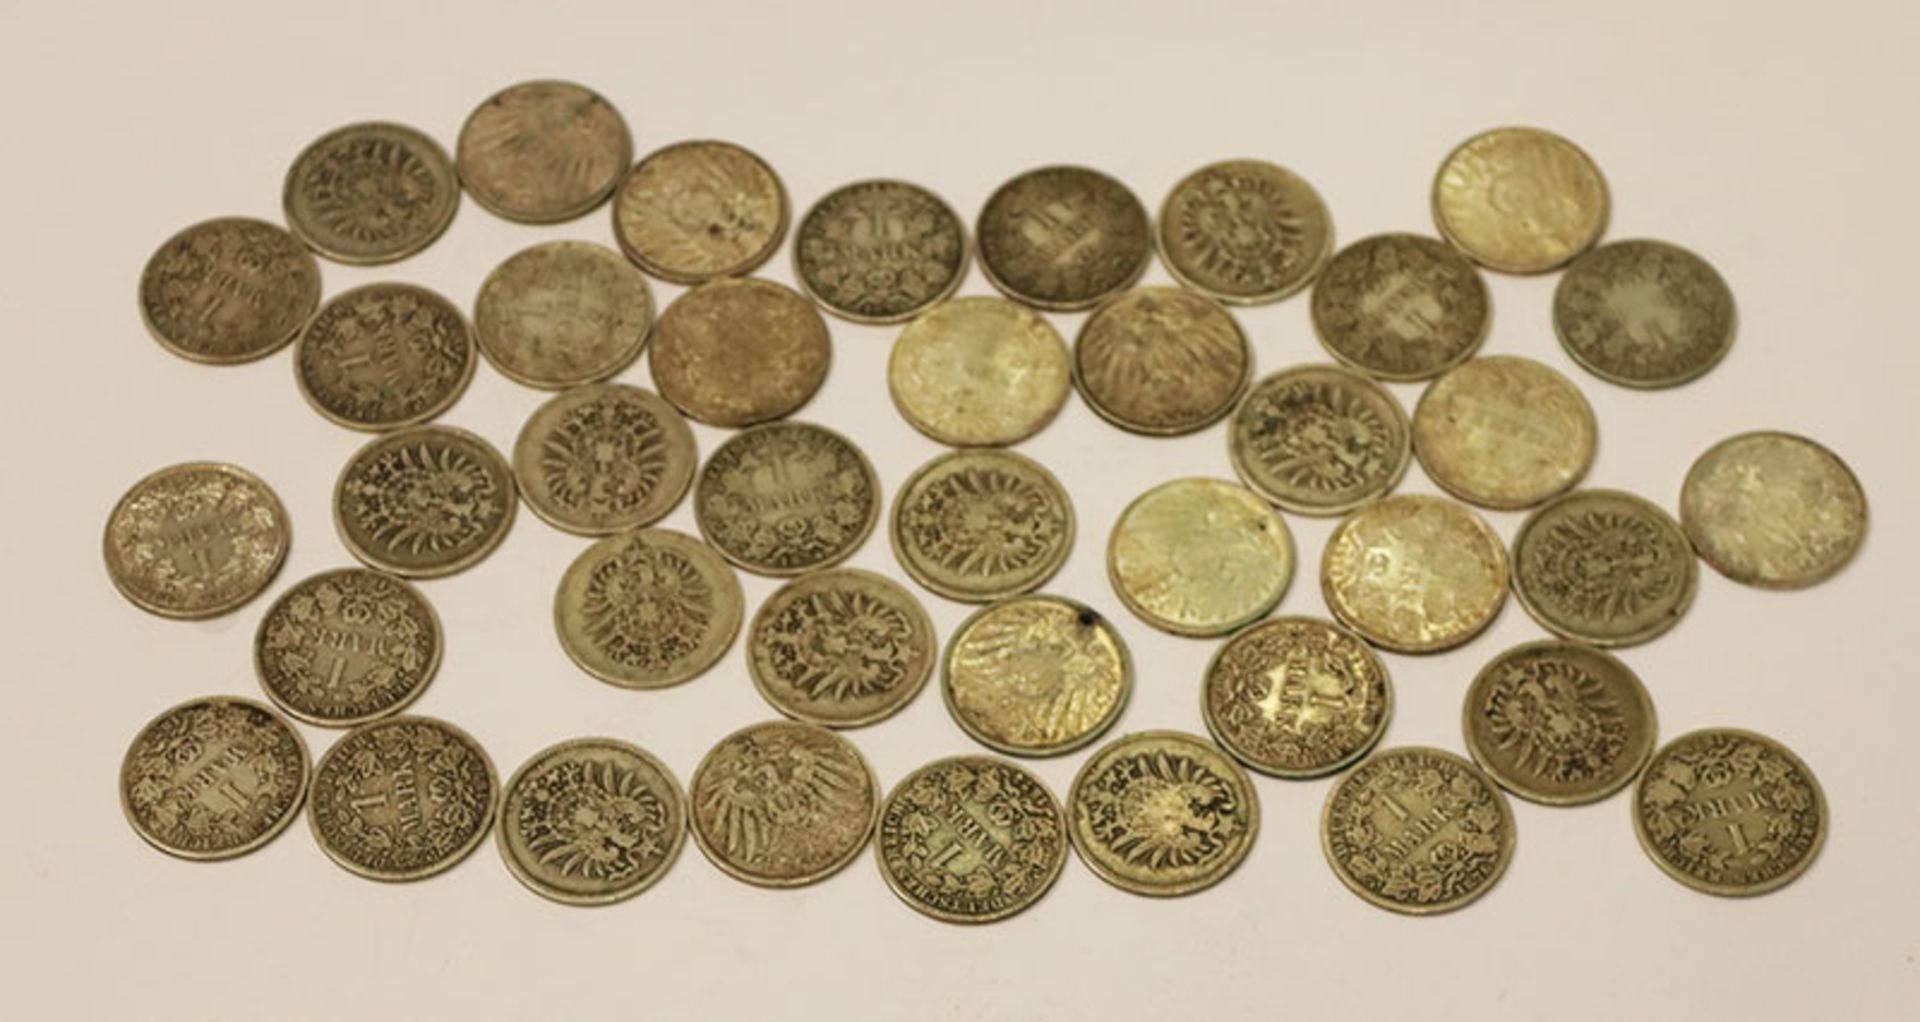 Konvolut von 40 Silbermünzen, 1 Mark, Deutsches Reich, 216 gr. Brutto, 194 gr. Netto